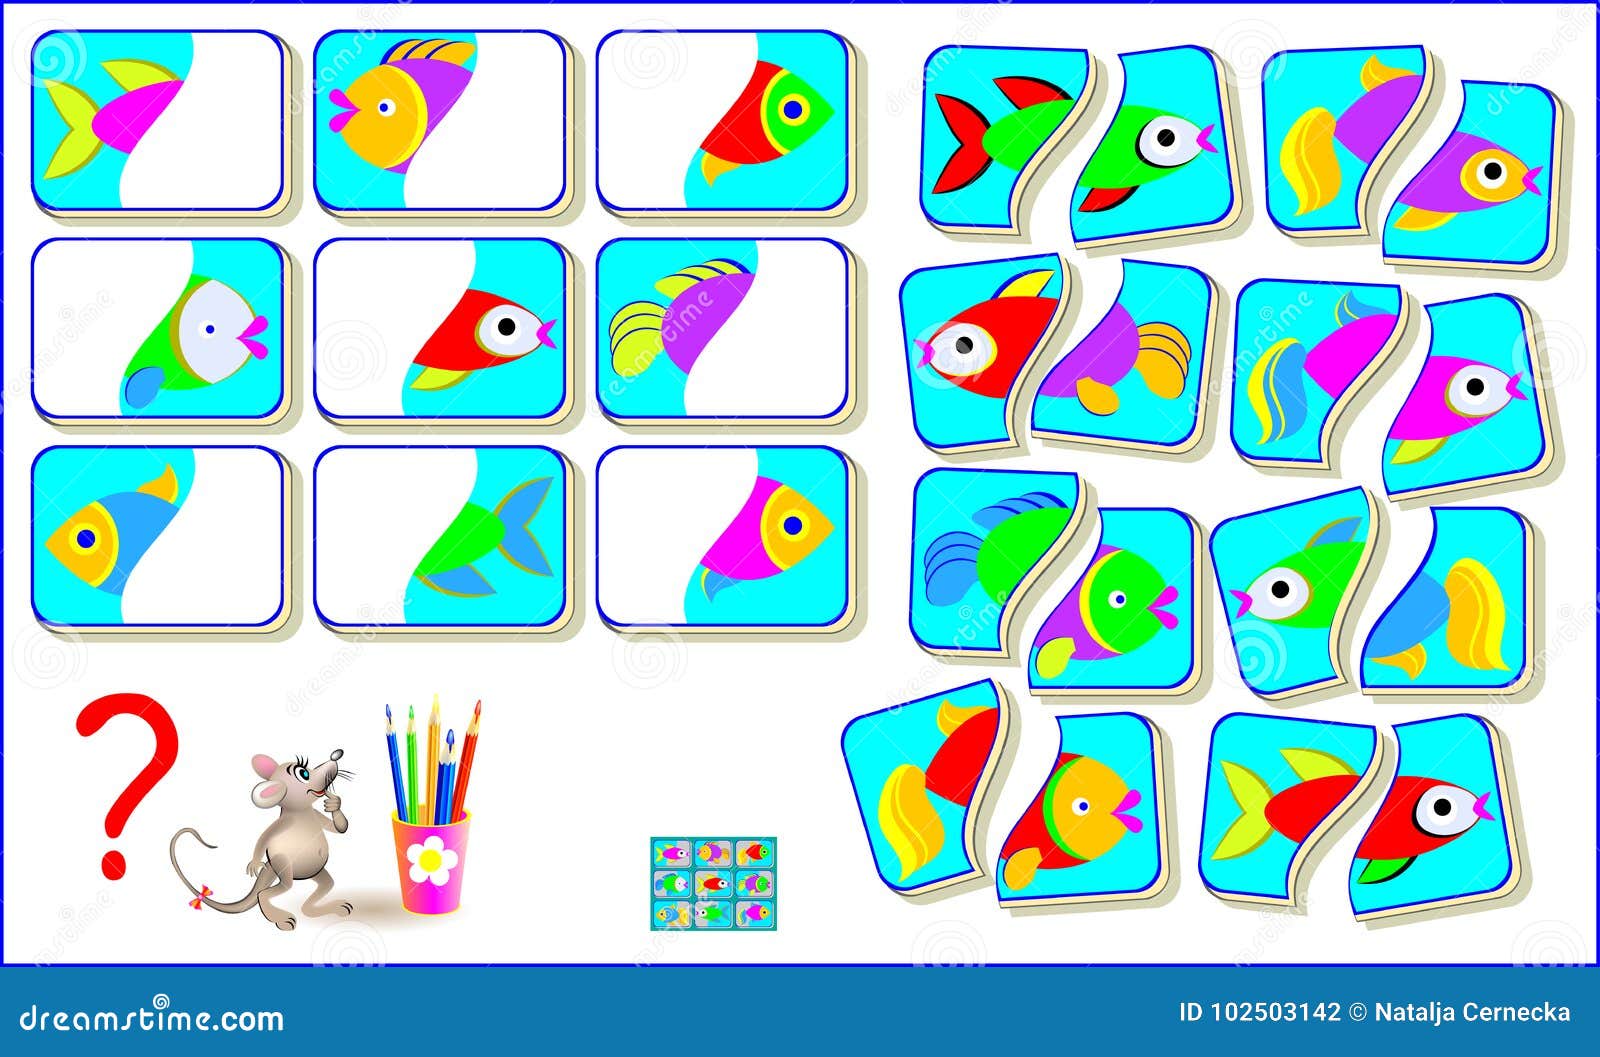 O Jogo Do Enigma Da Lógica Matemática Para Mais Esperto Resolve Exemplos E  Conta O Valor De Cada Peixe Escreva Os Números Nos Cír Ilustração do Vetor  - Ilustração de brainteaser, entretenimento